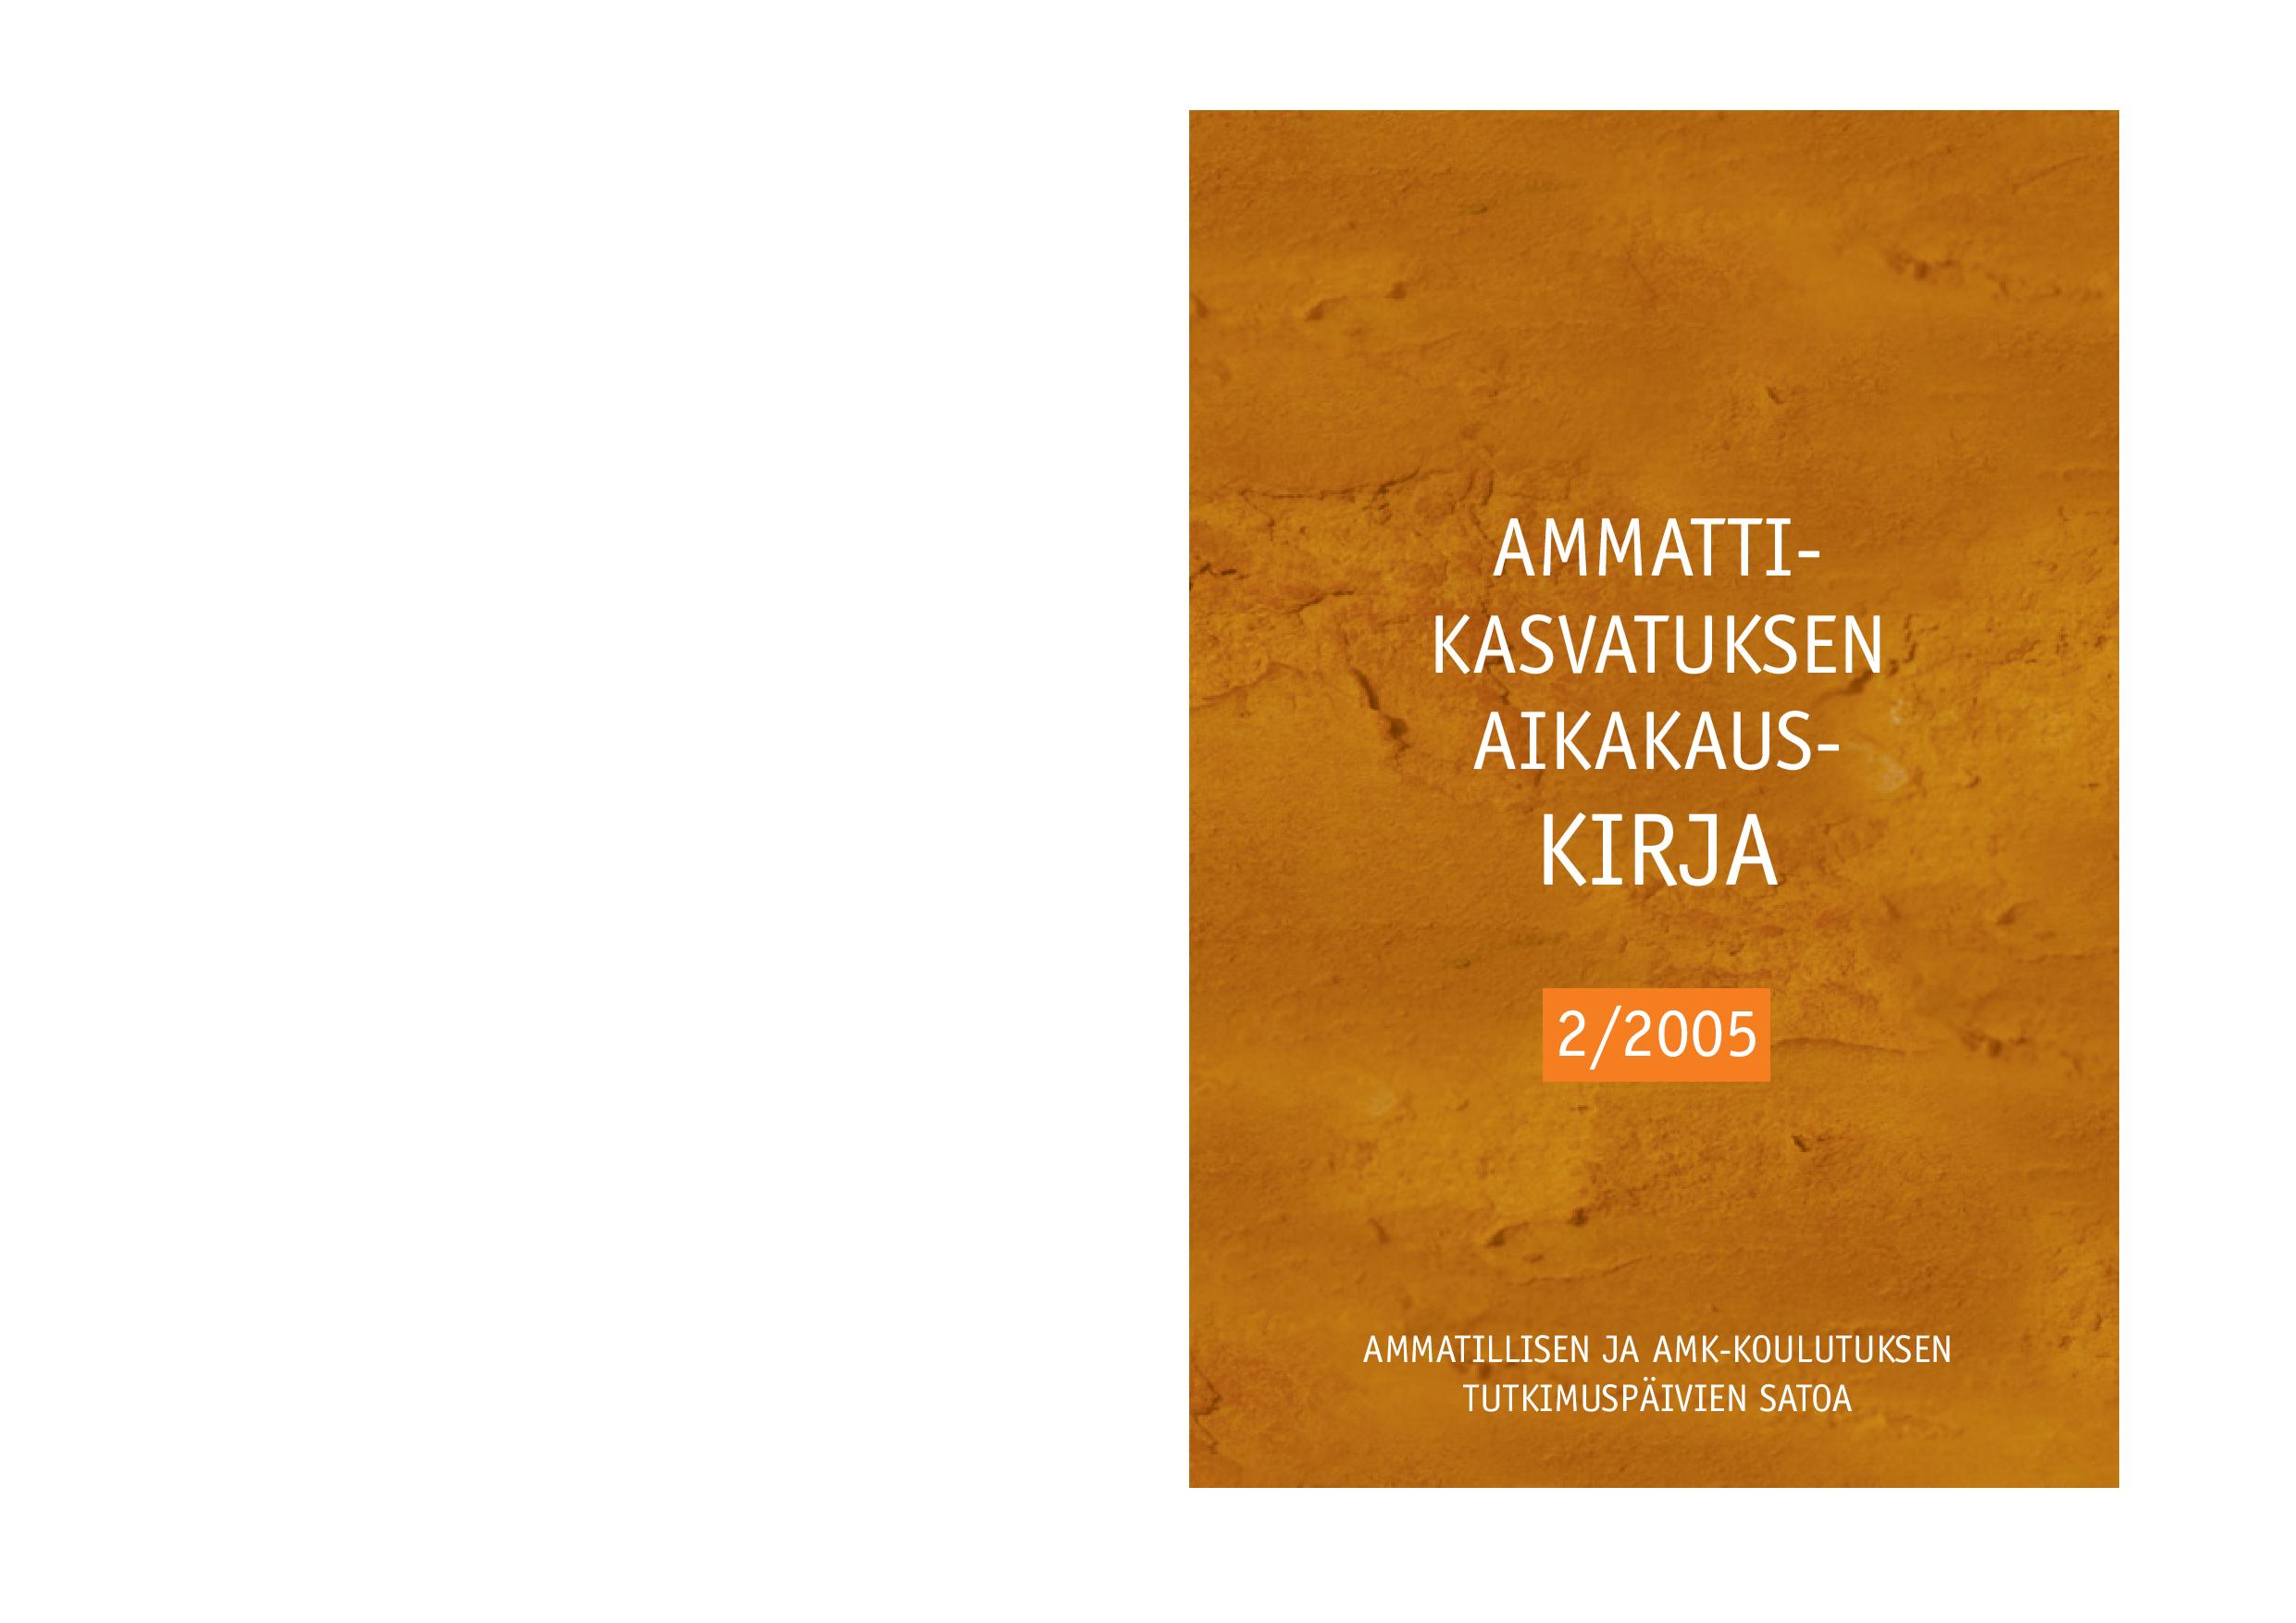 					Näytä Vol 7 Nro 2 (2005): Ammatillisen ja AMK-koulutuksen tutkimuspäivien satoa
				